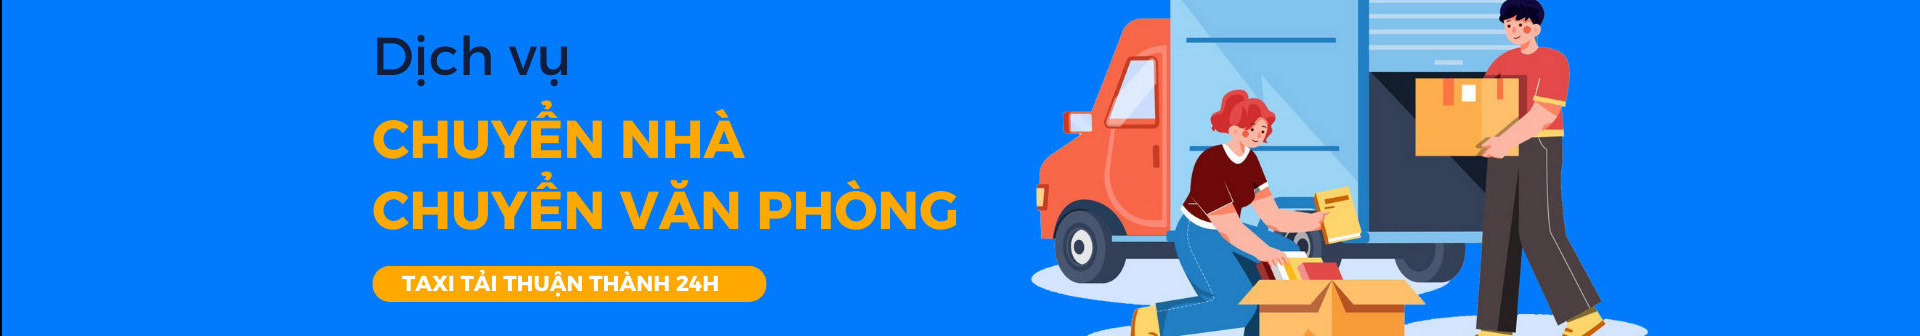 Taxi tải Thuận Thành 24h chính hãng tốt nhất's profile banner